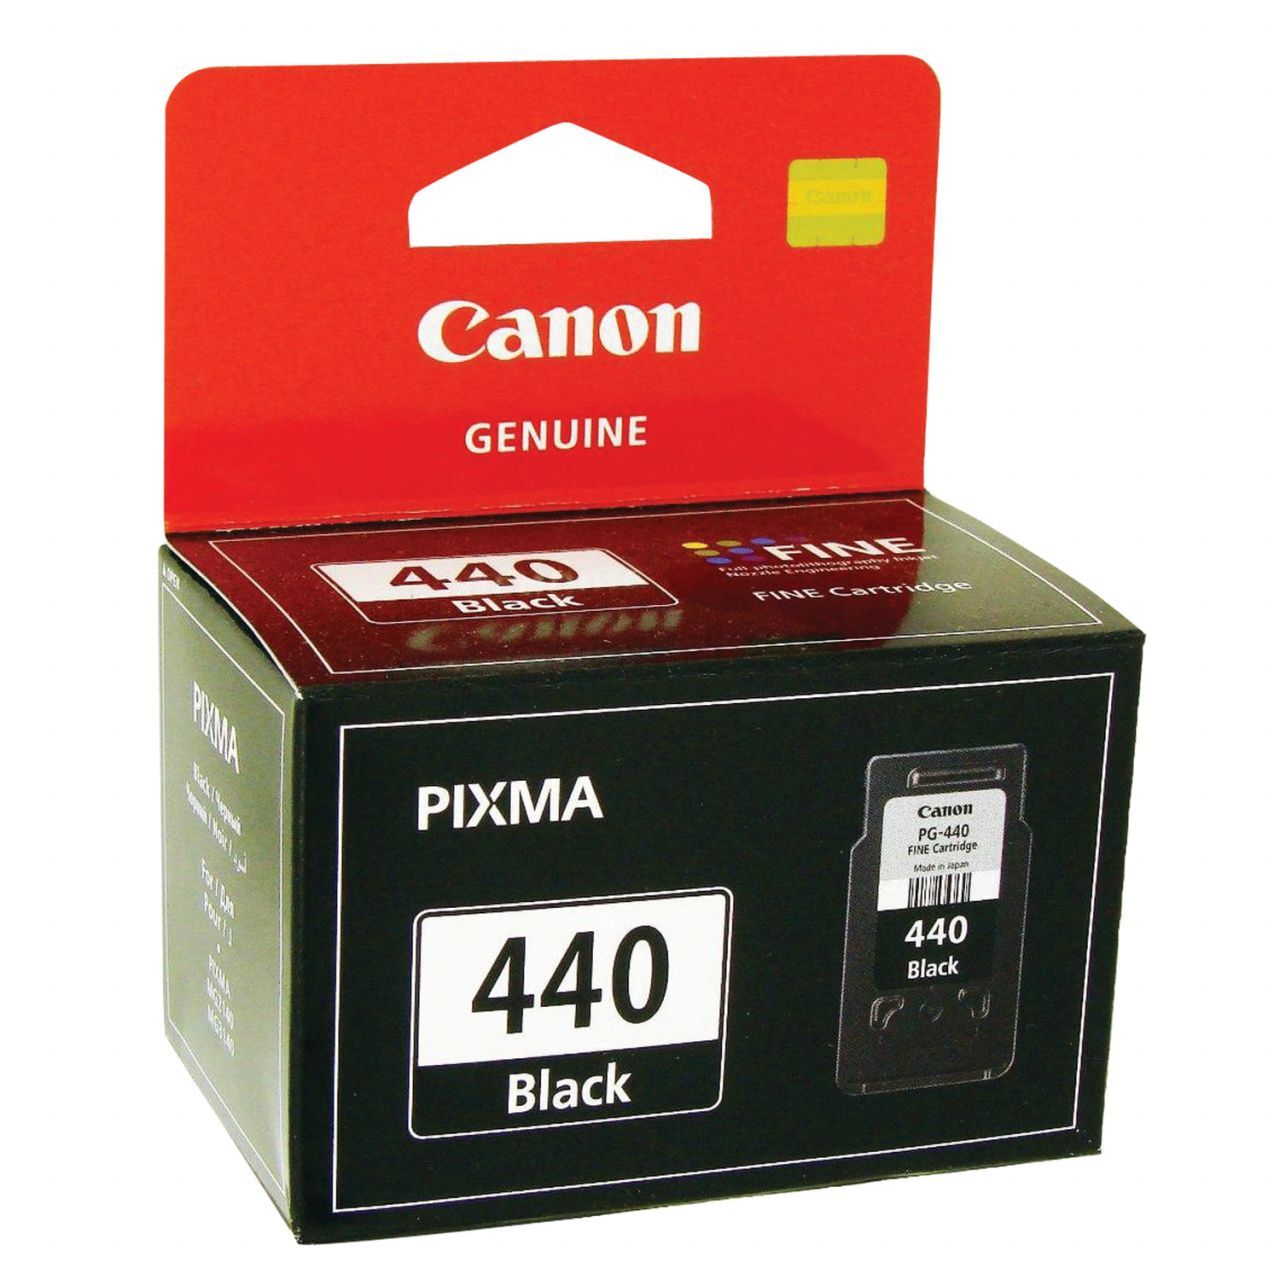 Тонер-картридж Canon (PG-440), черный, для струйного принтера, оригинал